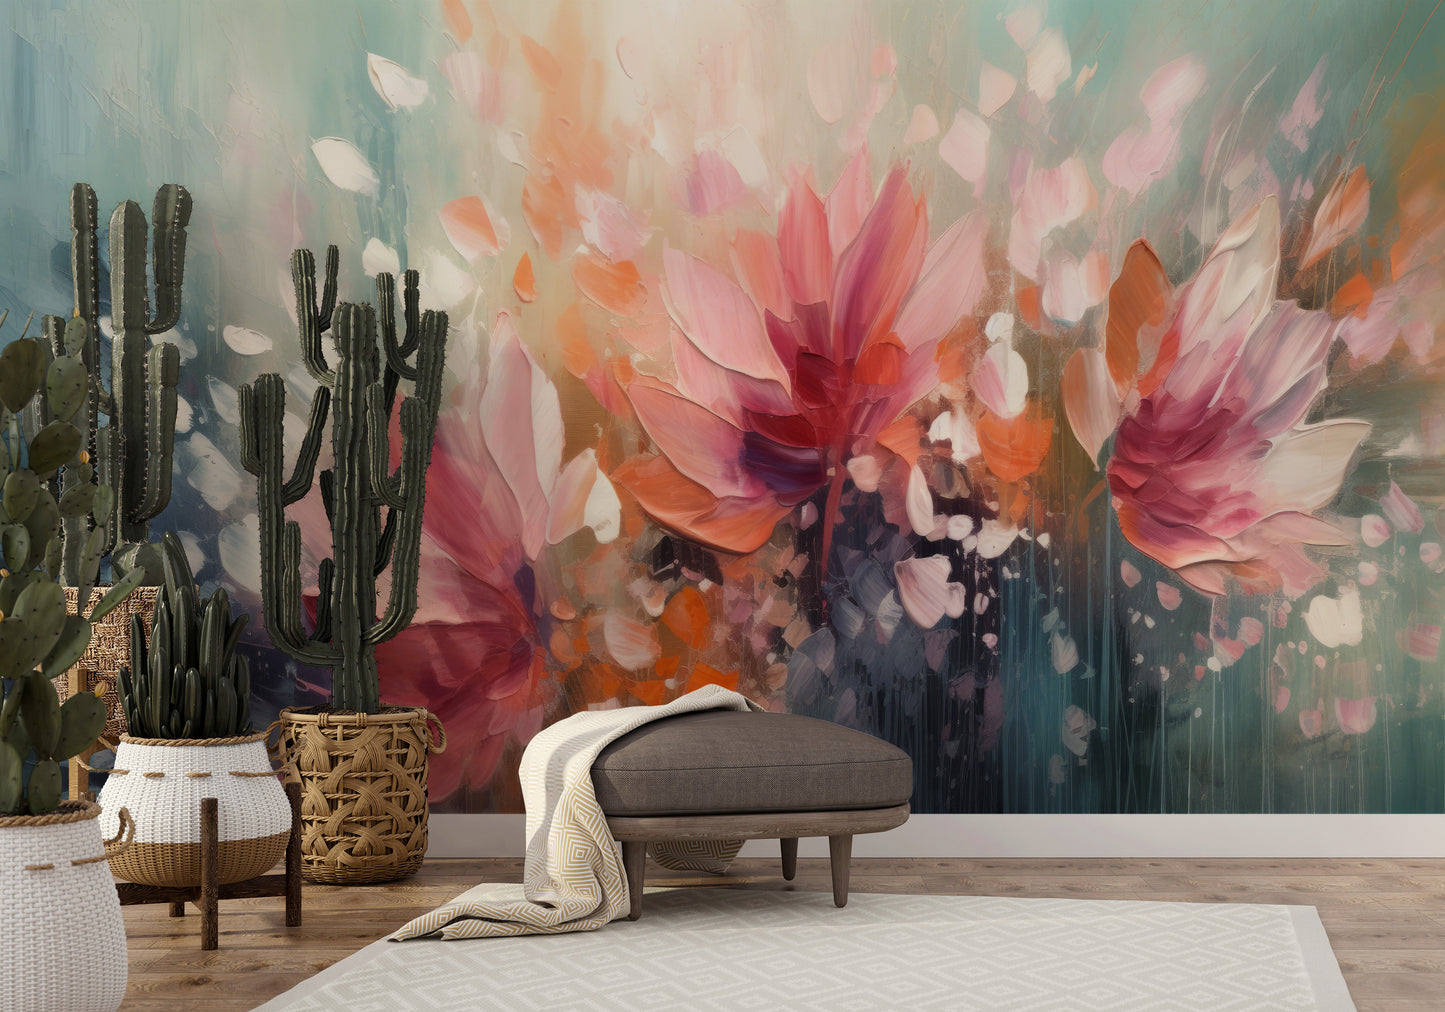 Wzór fototapety malowanej o nazwie Dreamy Floral Abstraction pokazanej w aranżacji wnętrza.